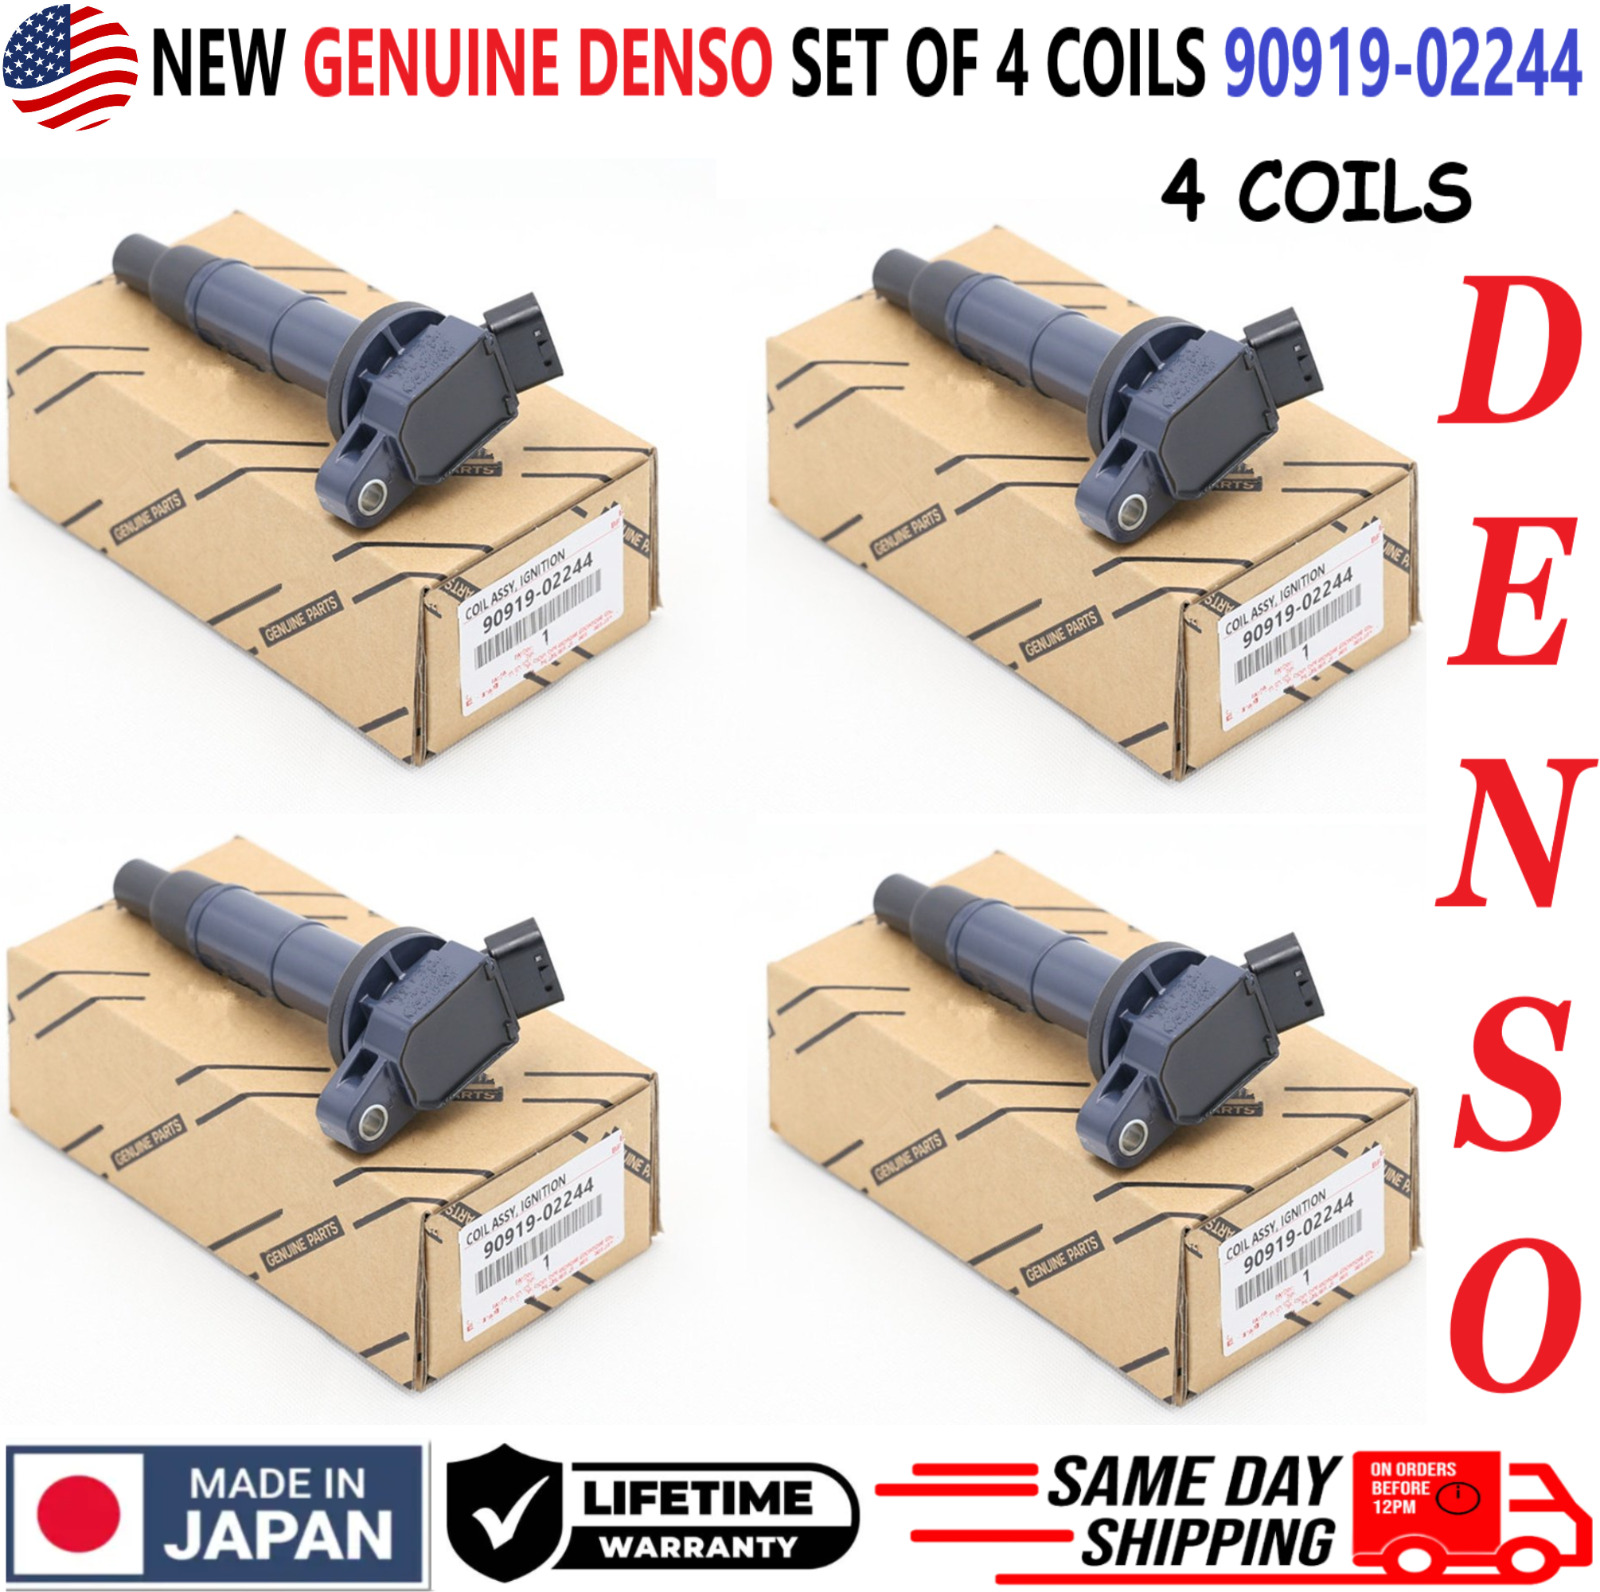 GENUINE DENSO x4 Ignition Coils For 2001-2012 Toyota Lexus Scion I4, 90919-02244